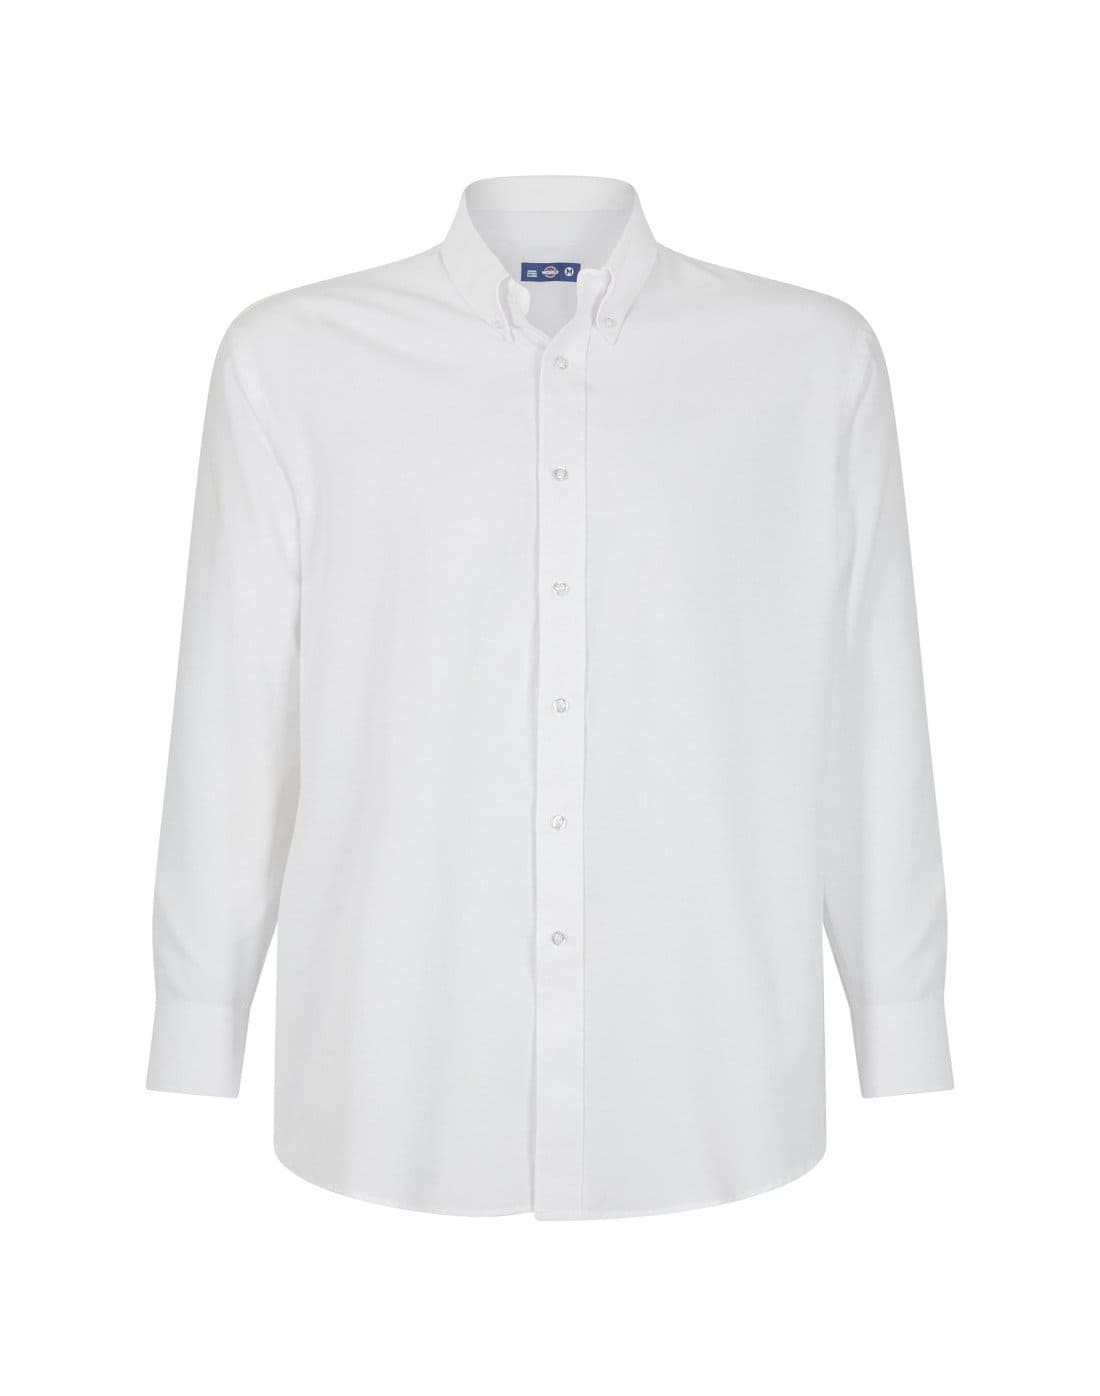 Camisa Oxford clásica de TEAMGRAFF, sinónimo de elegancia atemporal y comodidad, ideal para el trabajo y eventos formales